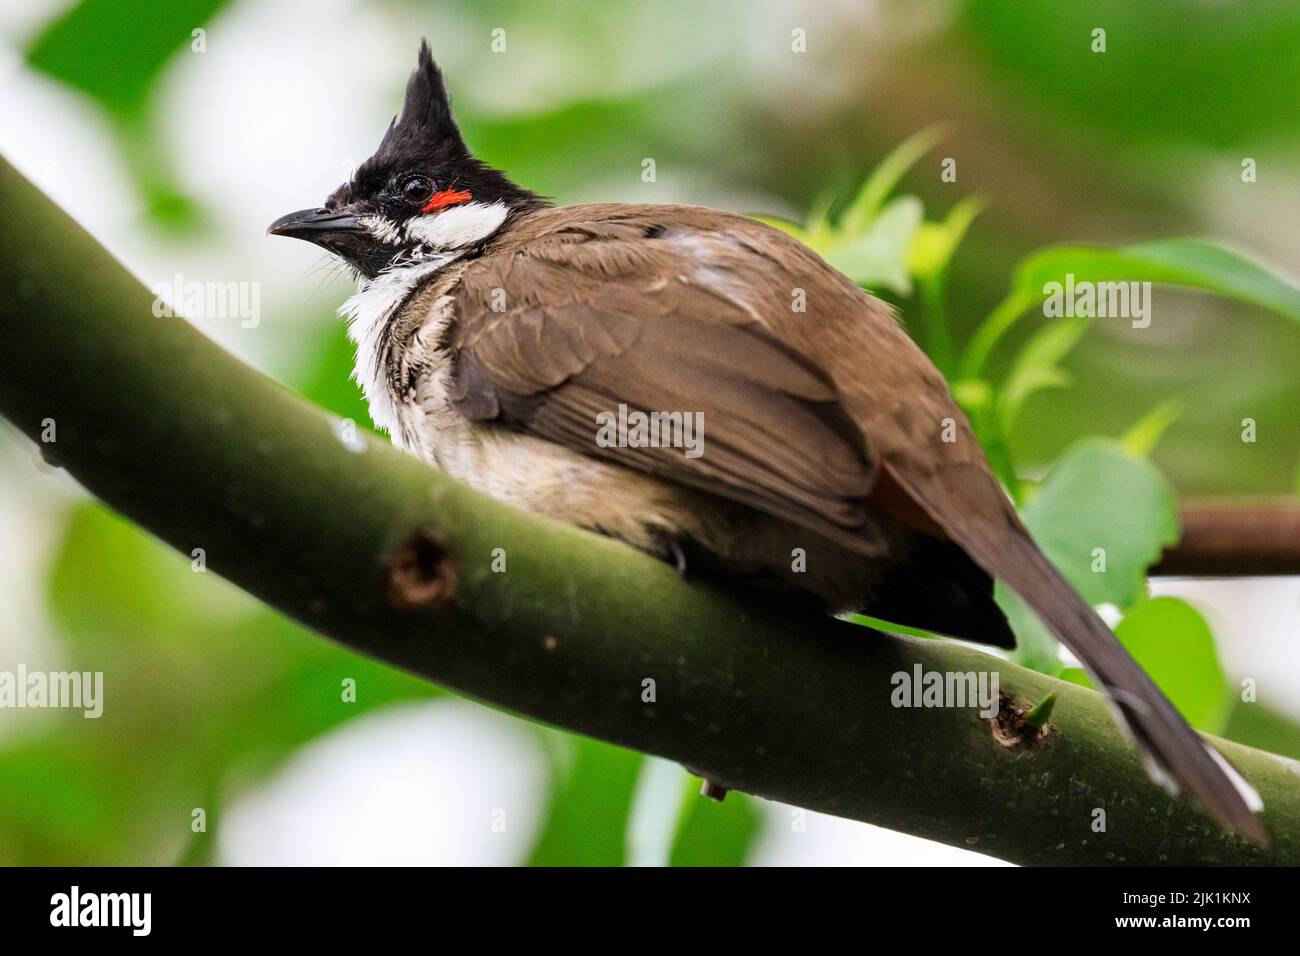 Bulbul à moustaches rouges (Pycnonotus jocosus), ou bulbul à crassets, oiseau de passereau, assis sur la branche de l'arbre Banque D'Images